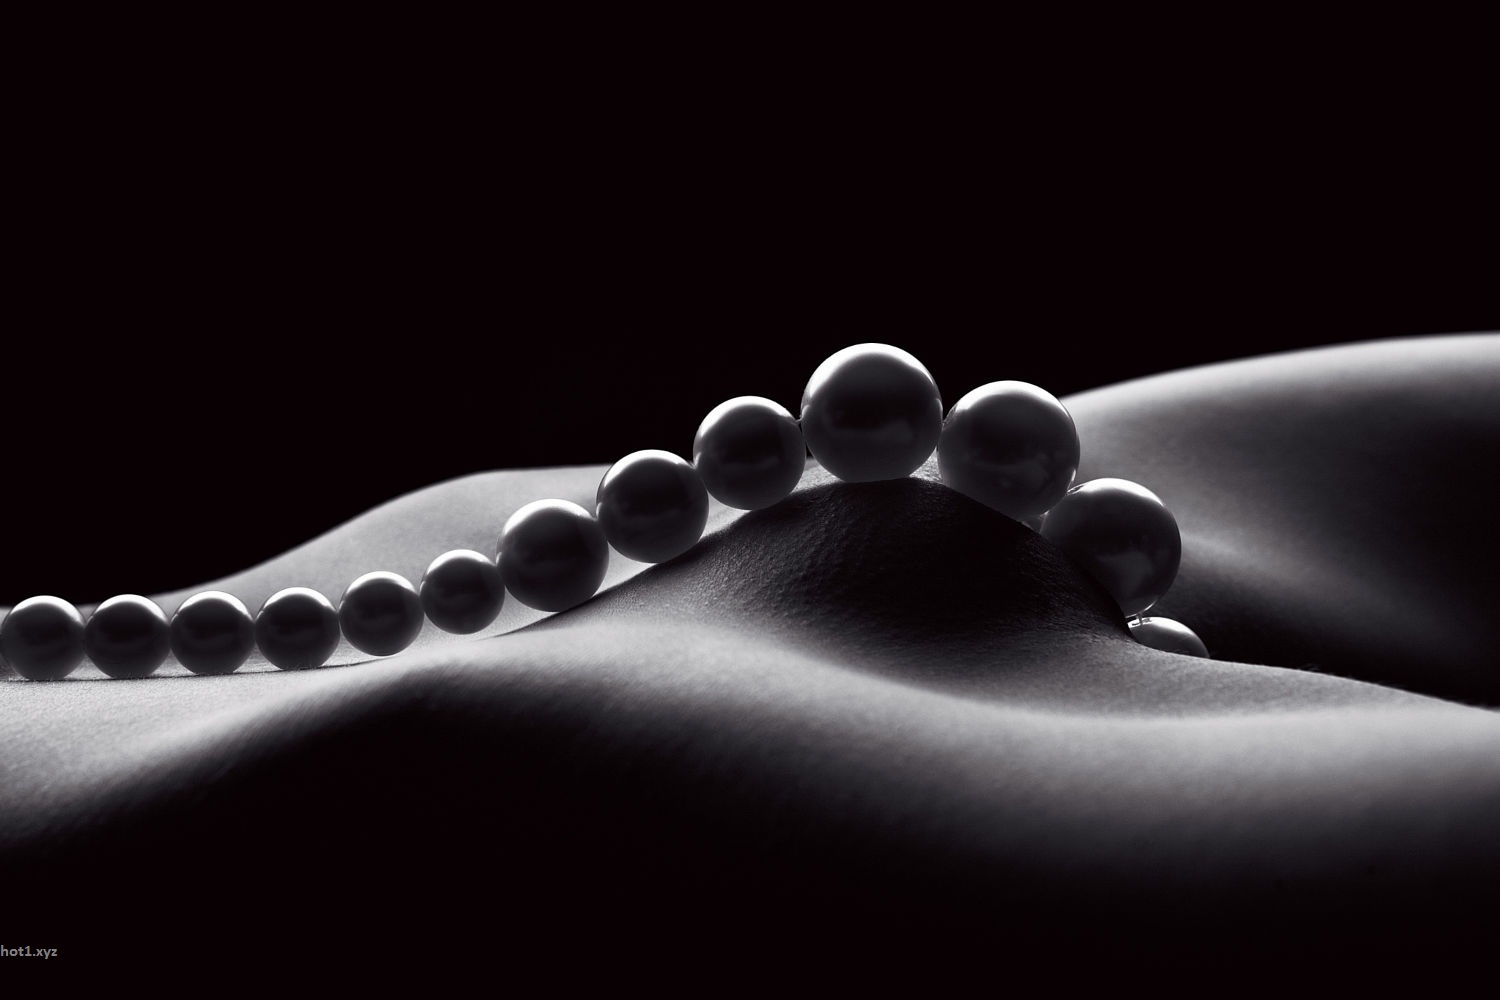 The pearl erotica